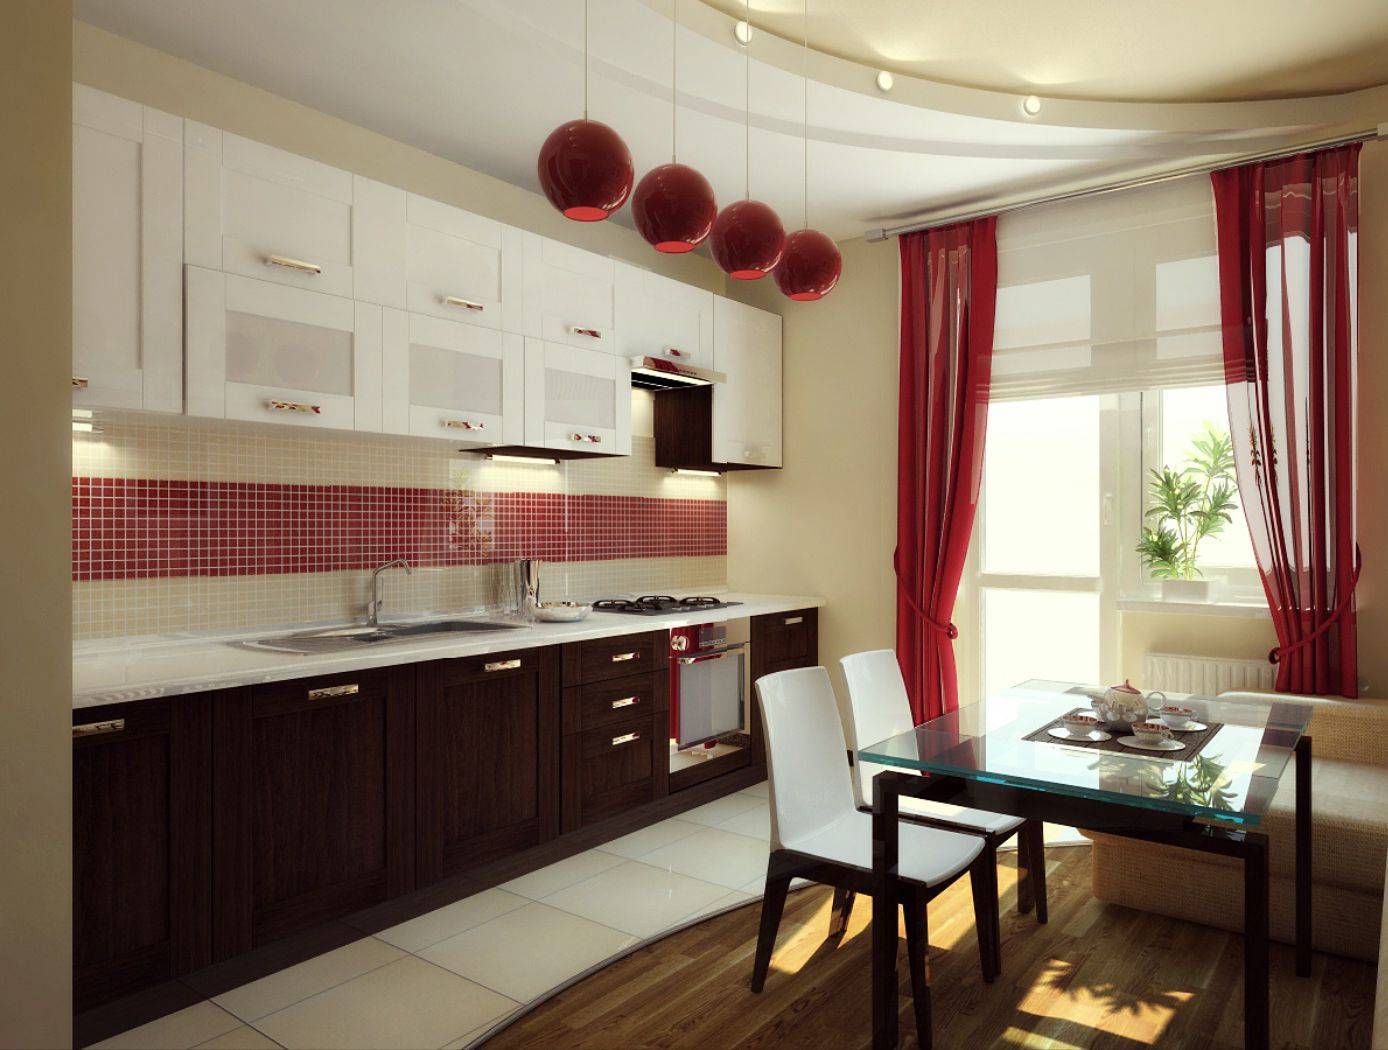 Бордовая кухня: какие элементы кухни выполнить в бордовом цвете, реальные фото примеры